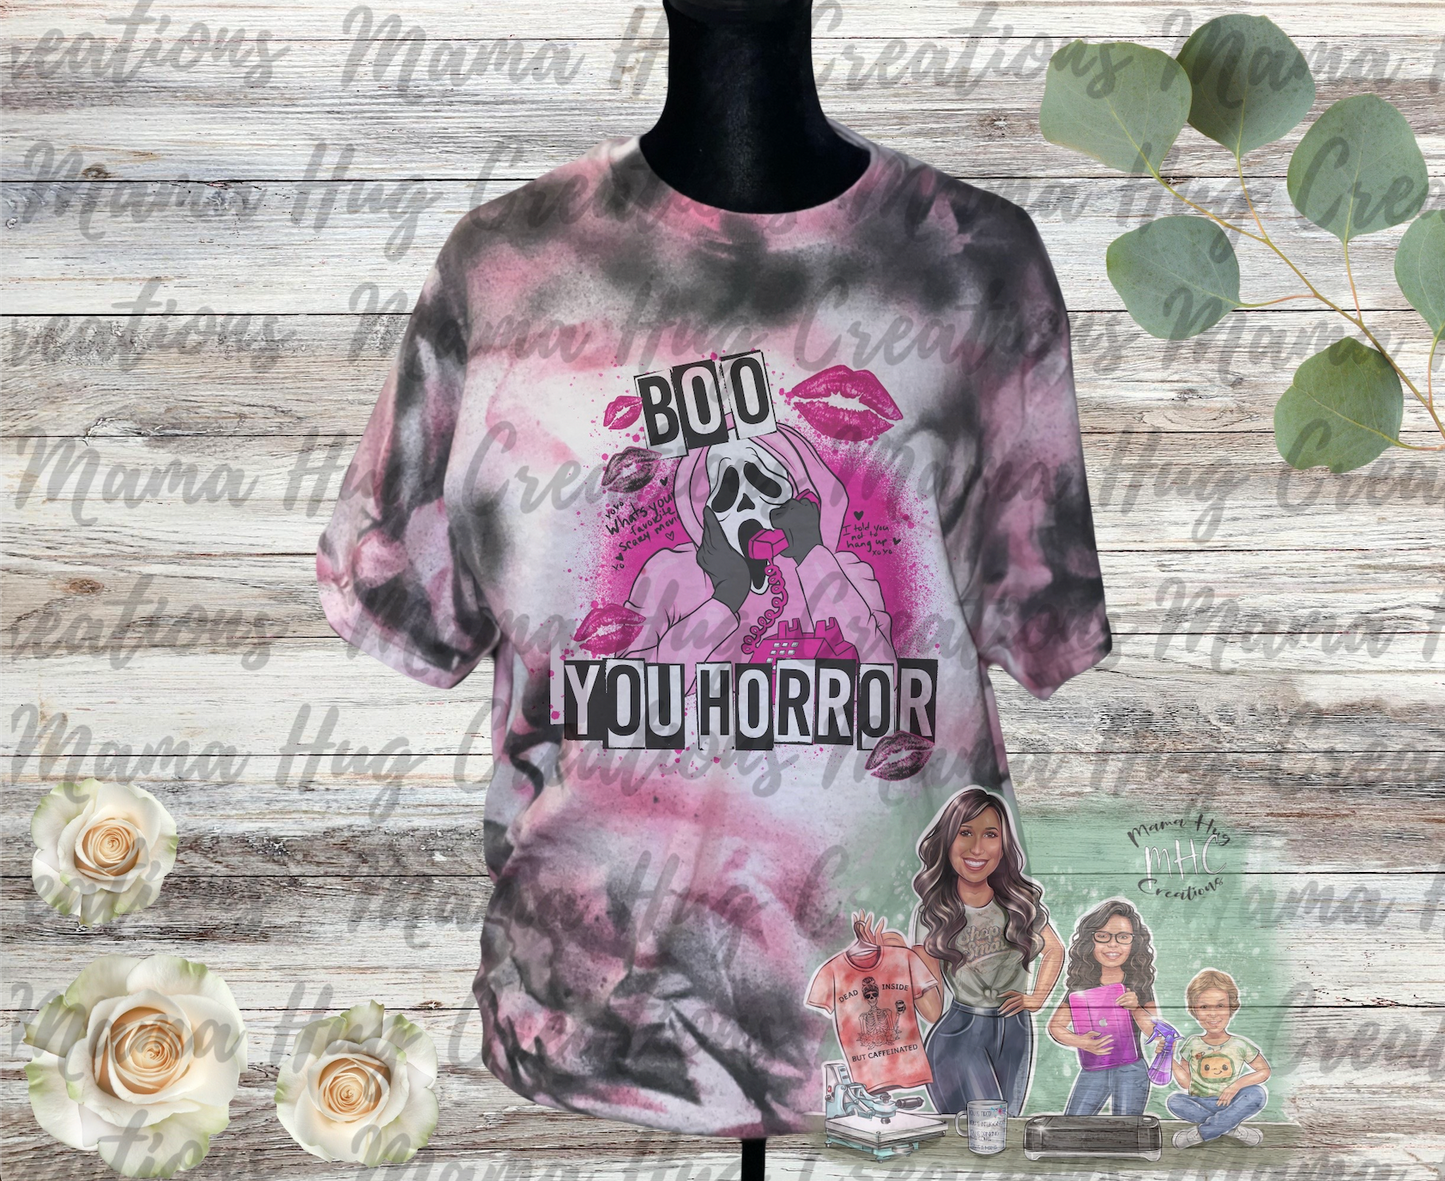 Boo You Horror Tie Dye T-Shirt